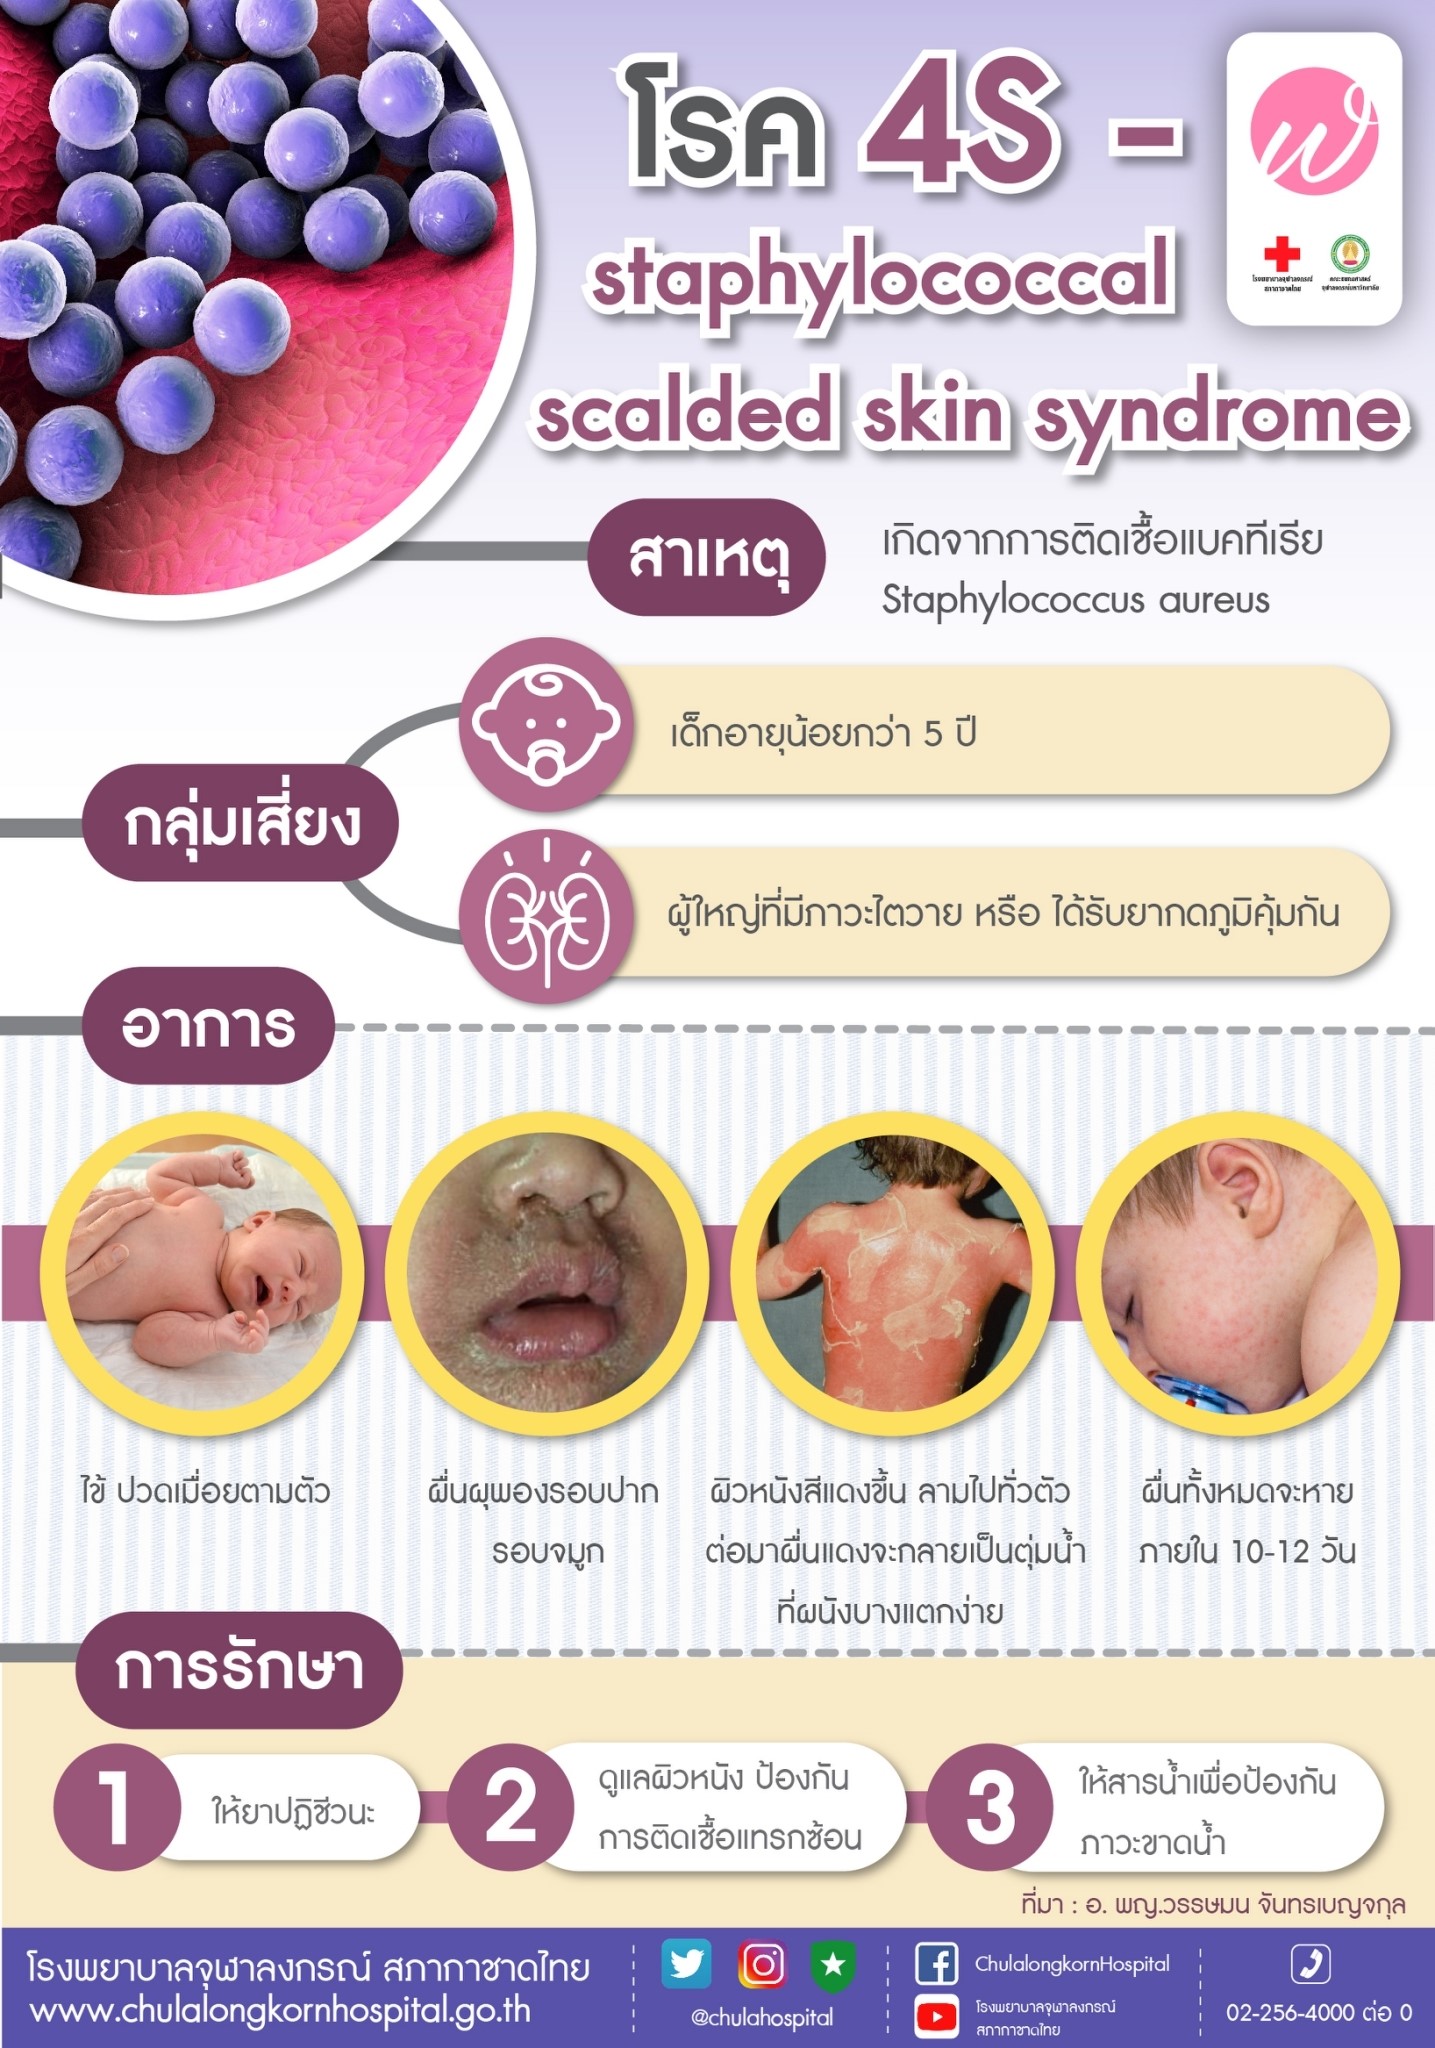 โรค 4S – staphylococcal scalded skin syndrome